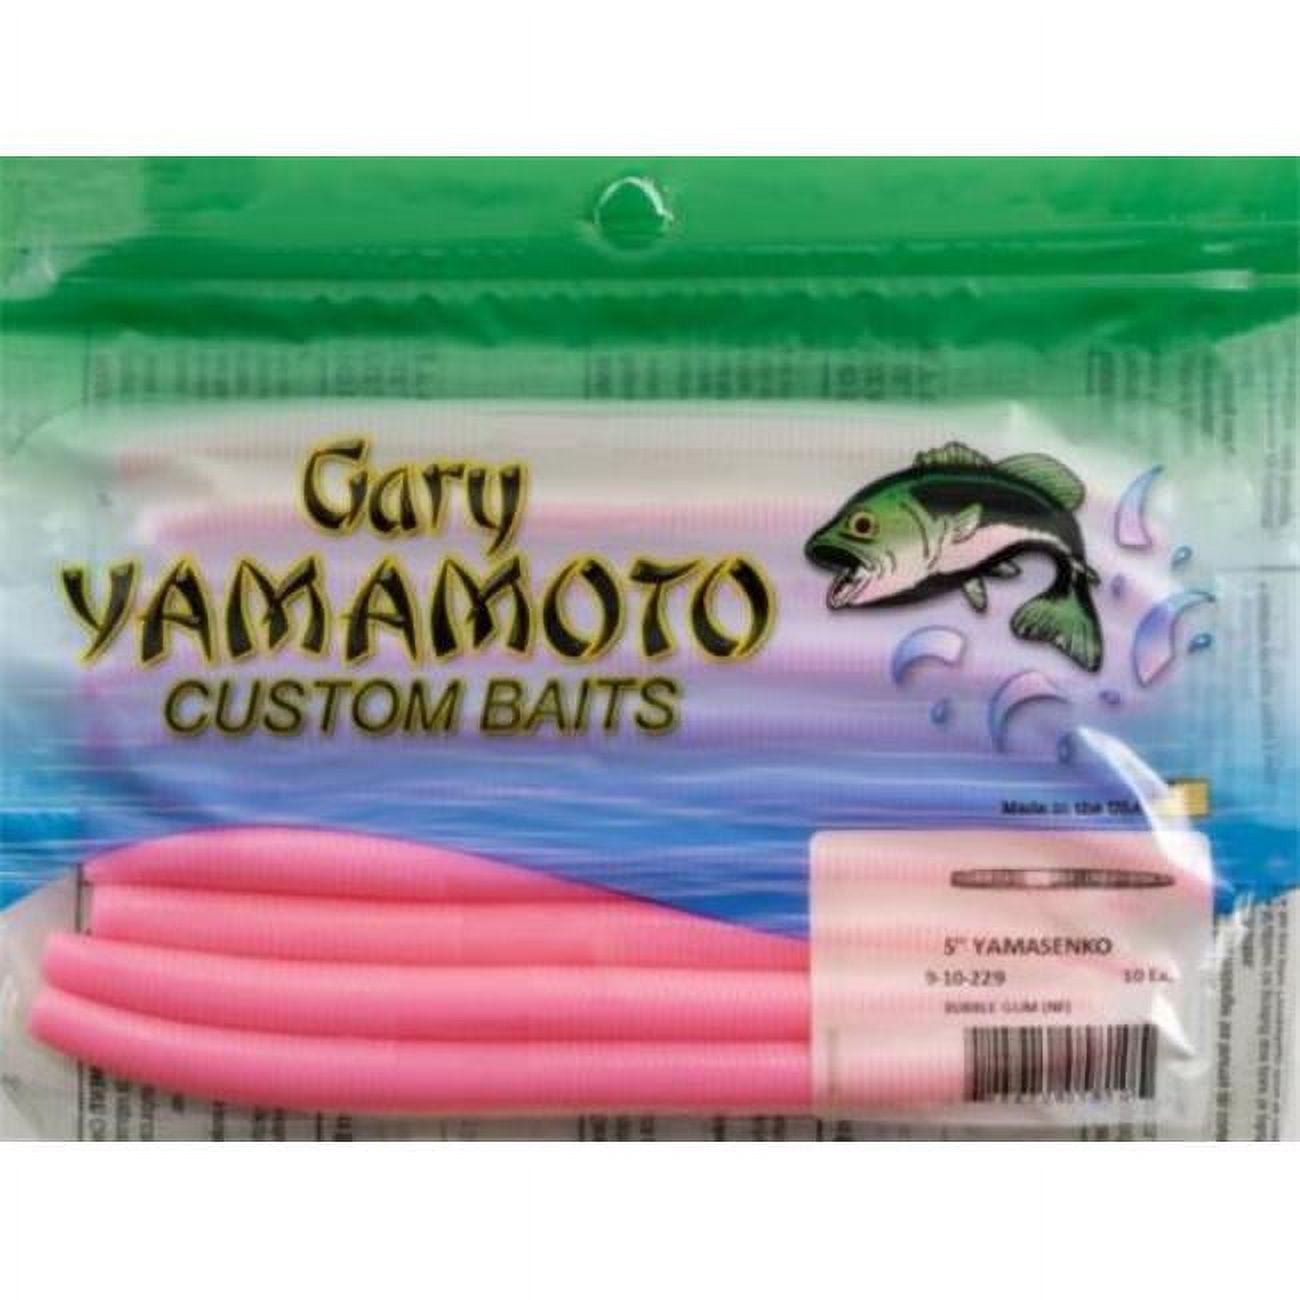 Yamamoto Baits, #yamamotobaits #gsmoutdoors